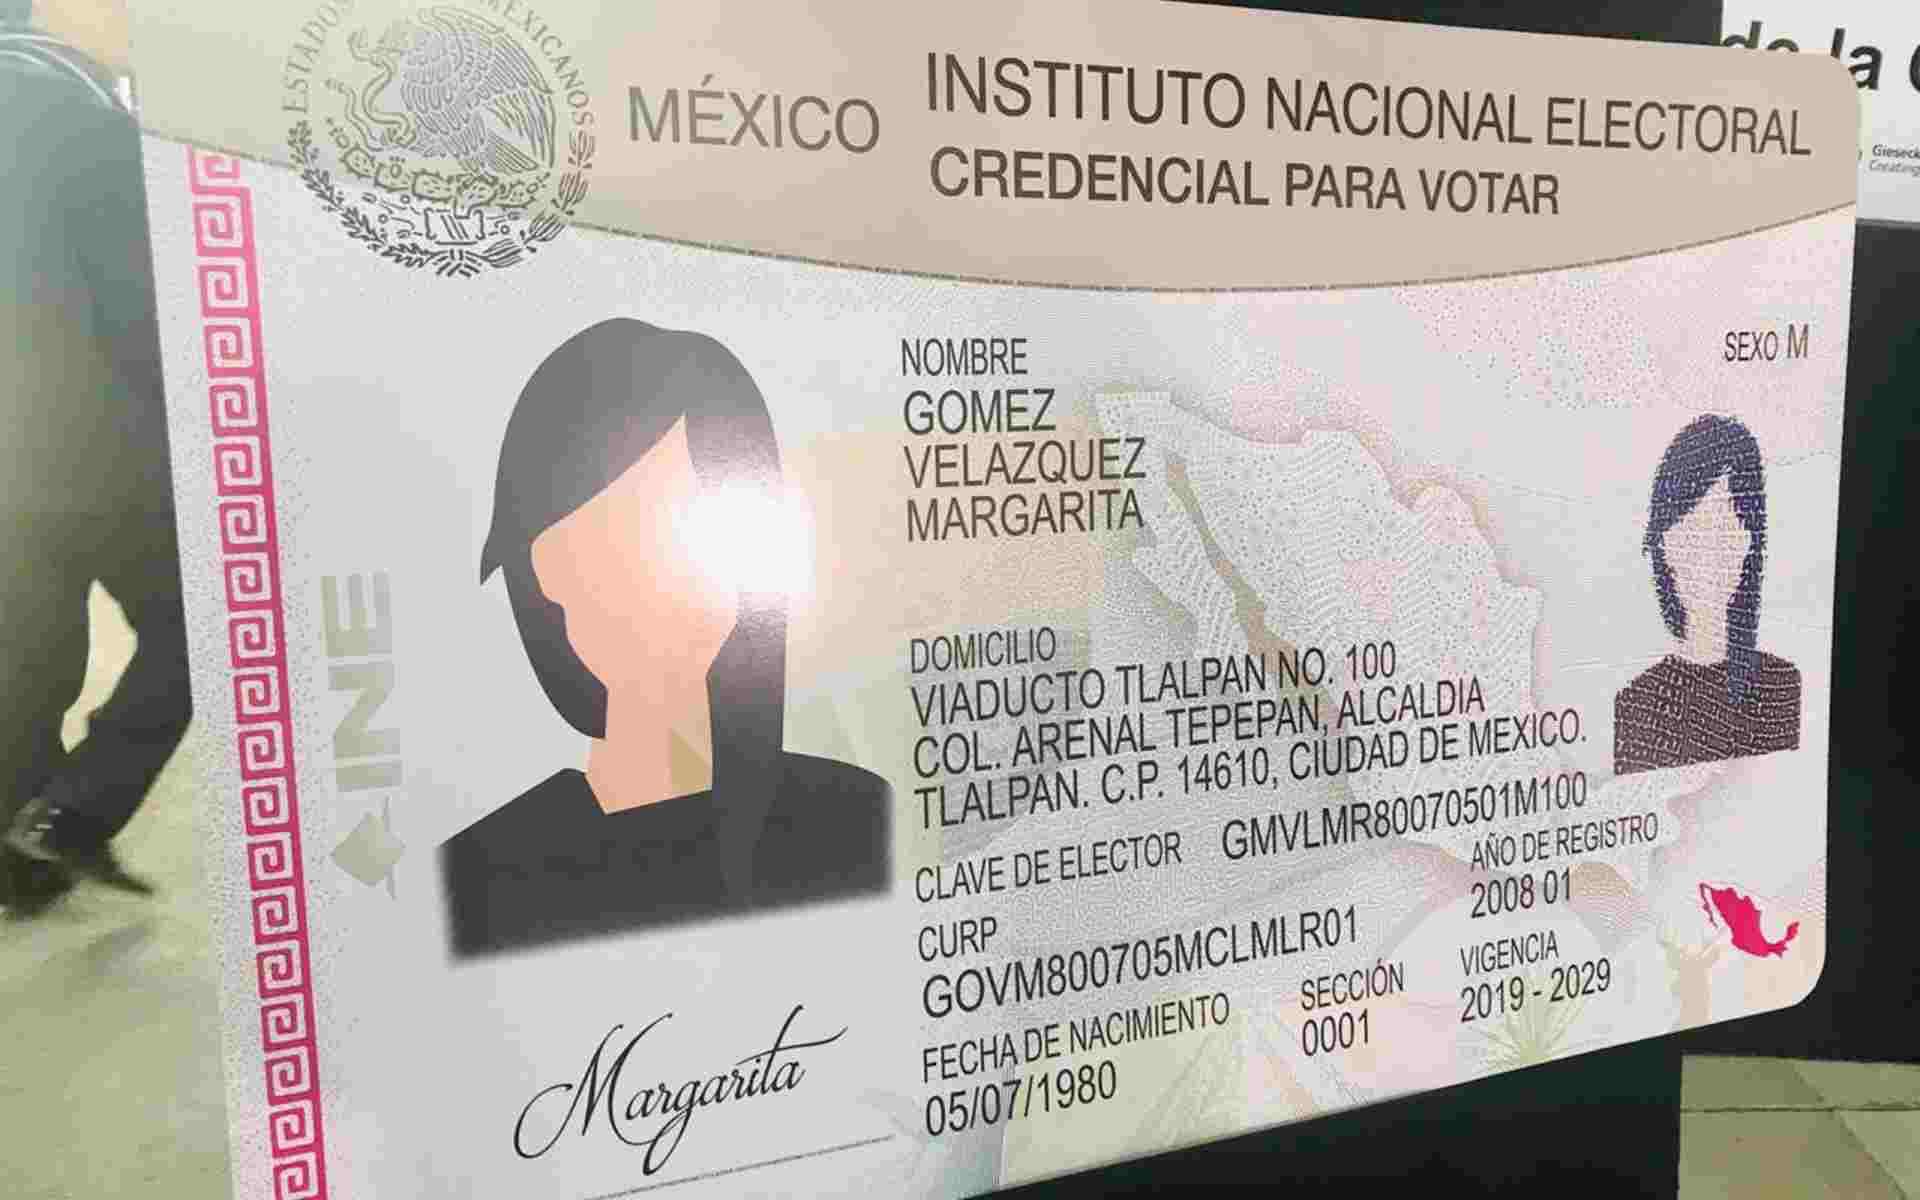 Esta solicitud se hizo gracias a la petición de los mexicanos en el exterior | Foto: INE México